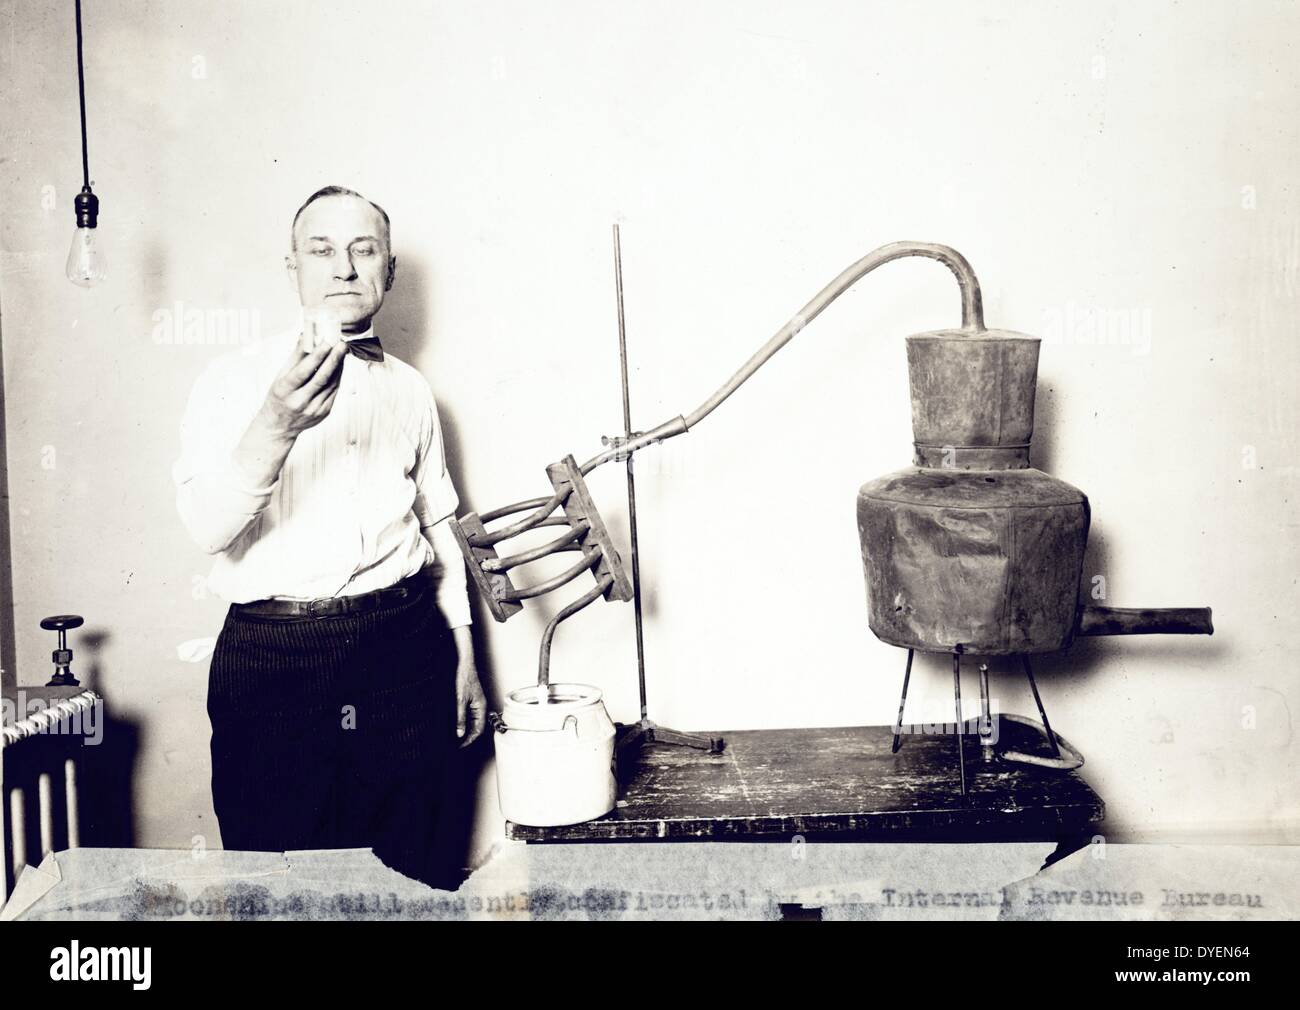 Moonshine encore récemment confisqué par l'Internal Revenue Bureau photographié au ministère du Trésor entre 1921 et 1932. Homme debout à côté de toujours à la recherche de contenu de verre. Banque D'Images